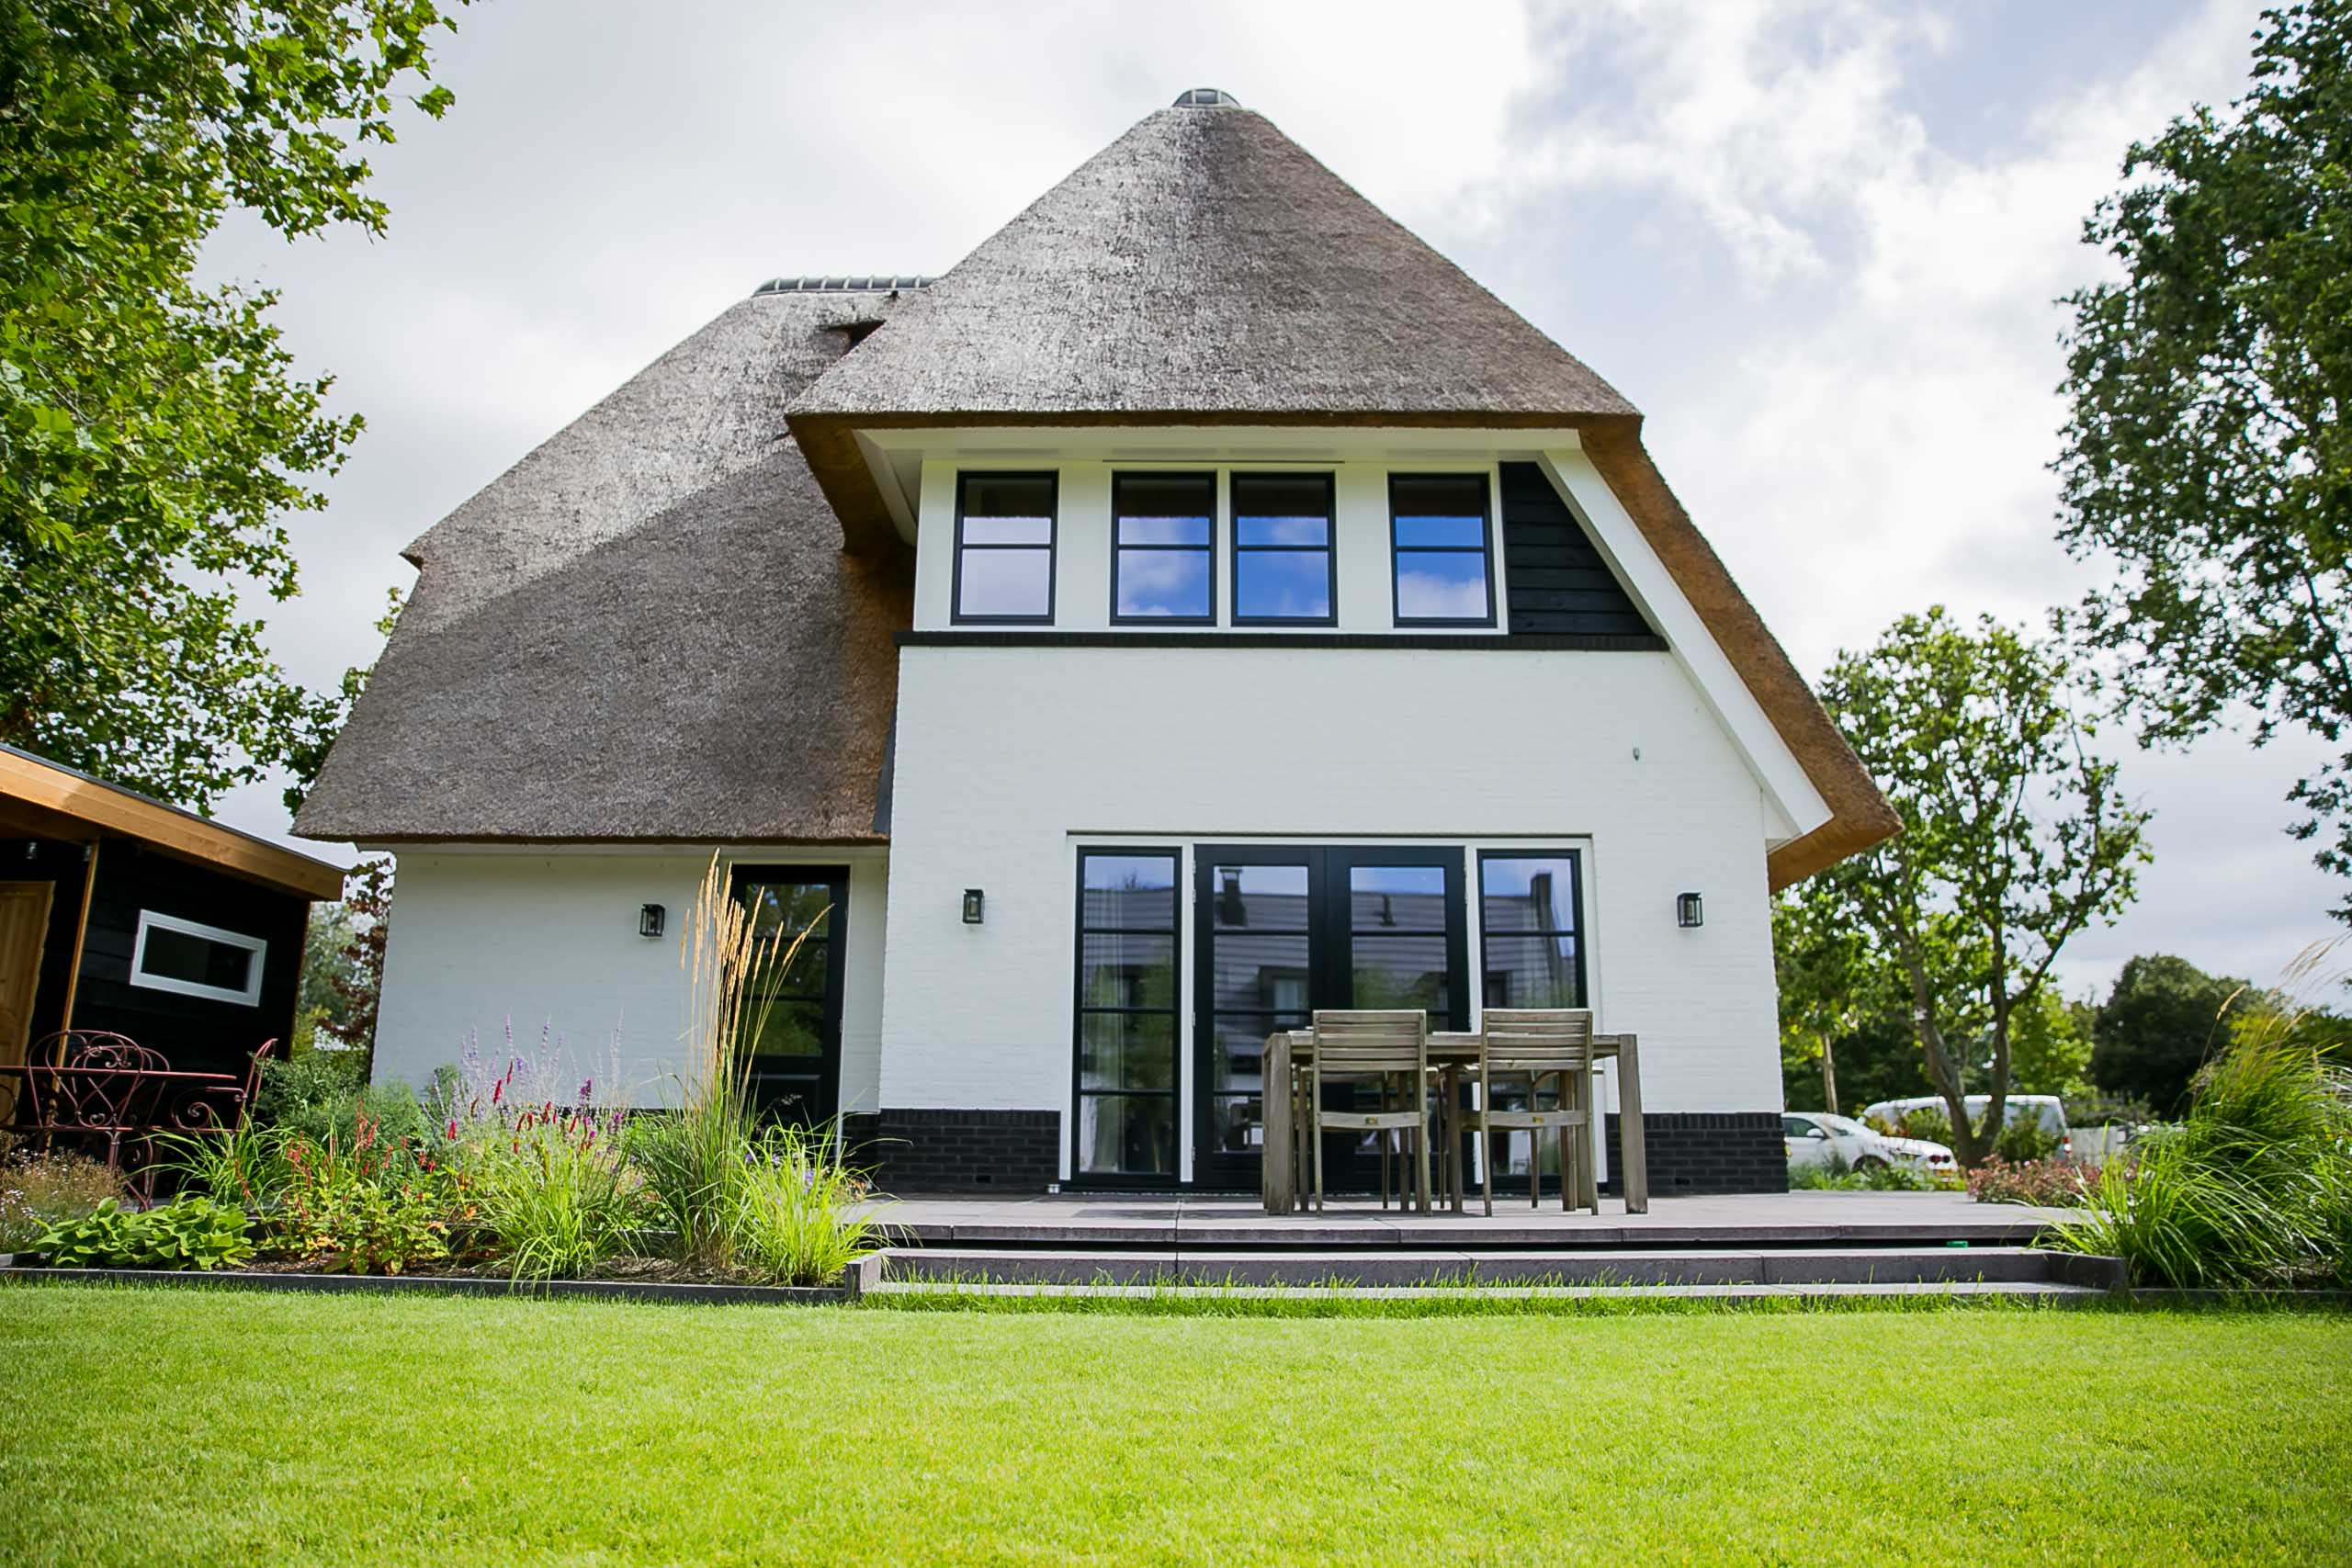 Foto: Exterieur villa Boswitje te Noordwijk   Architectuurwonen  14 